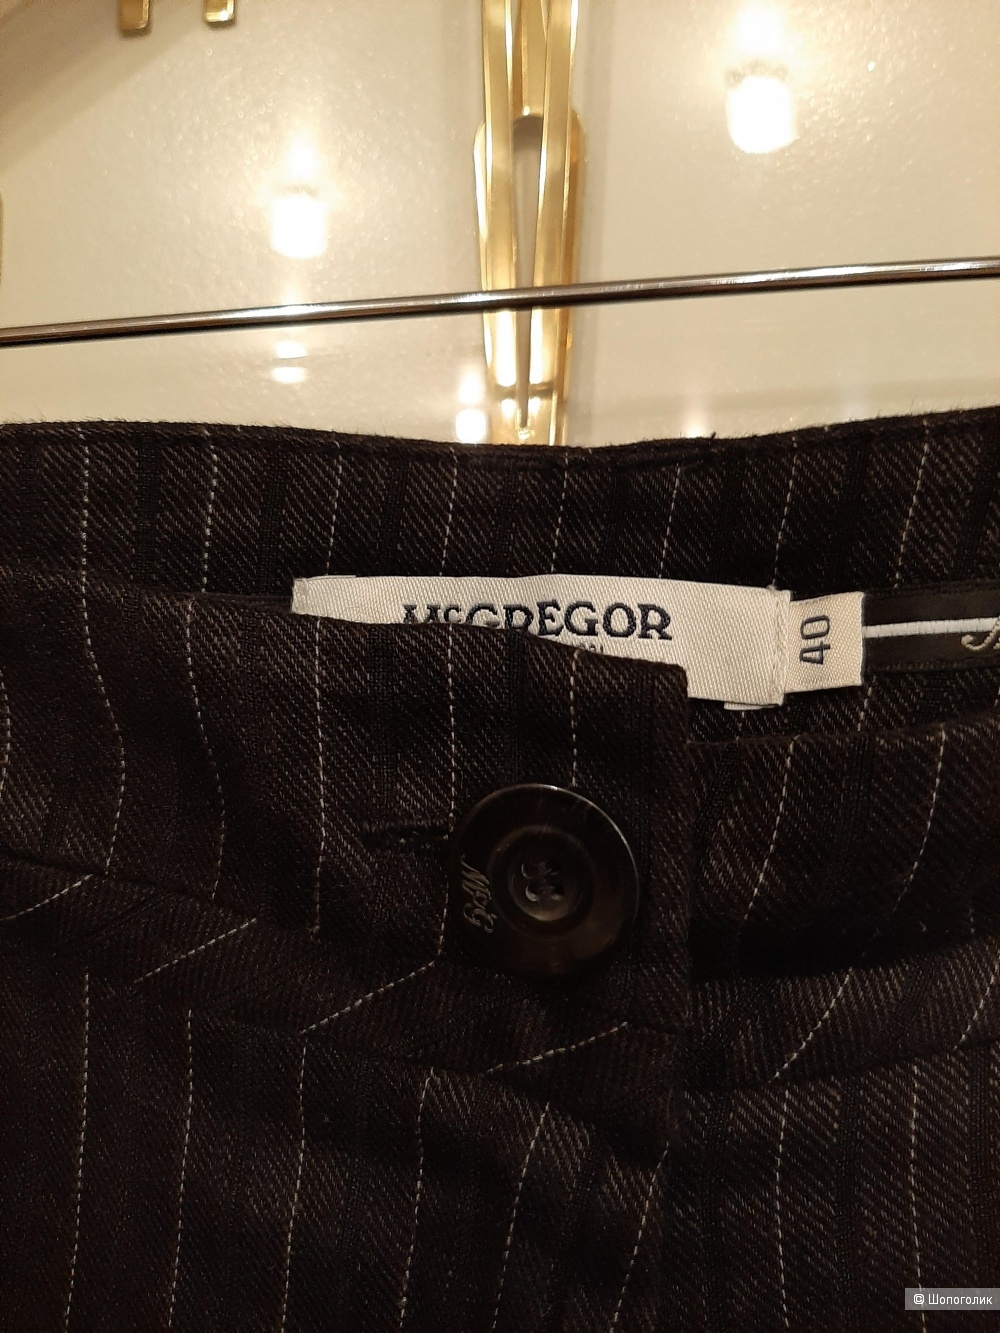 Сет брюки MC Gregor и жакет H&M размер 46/48